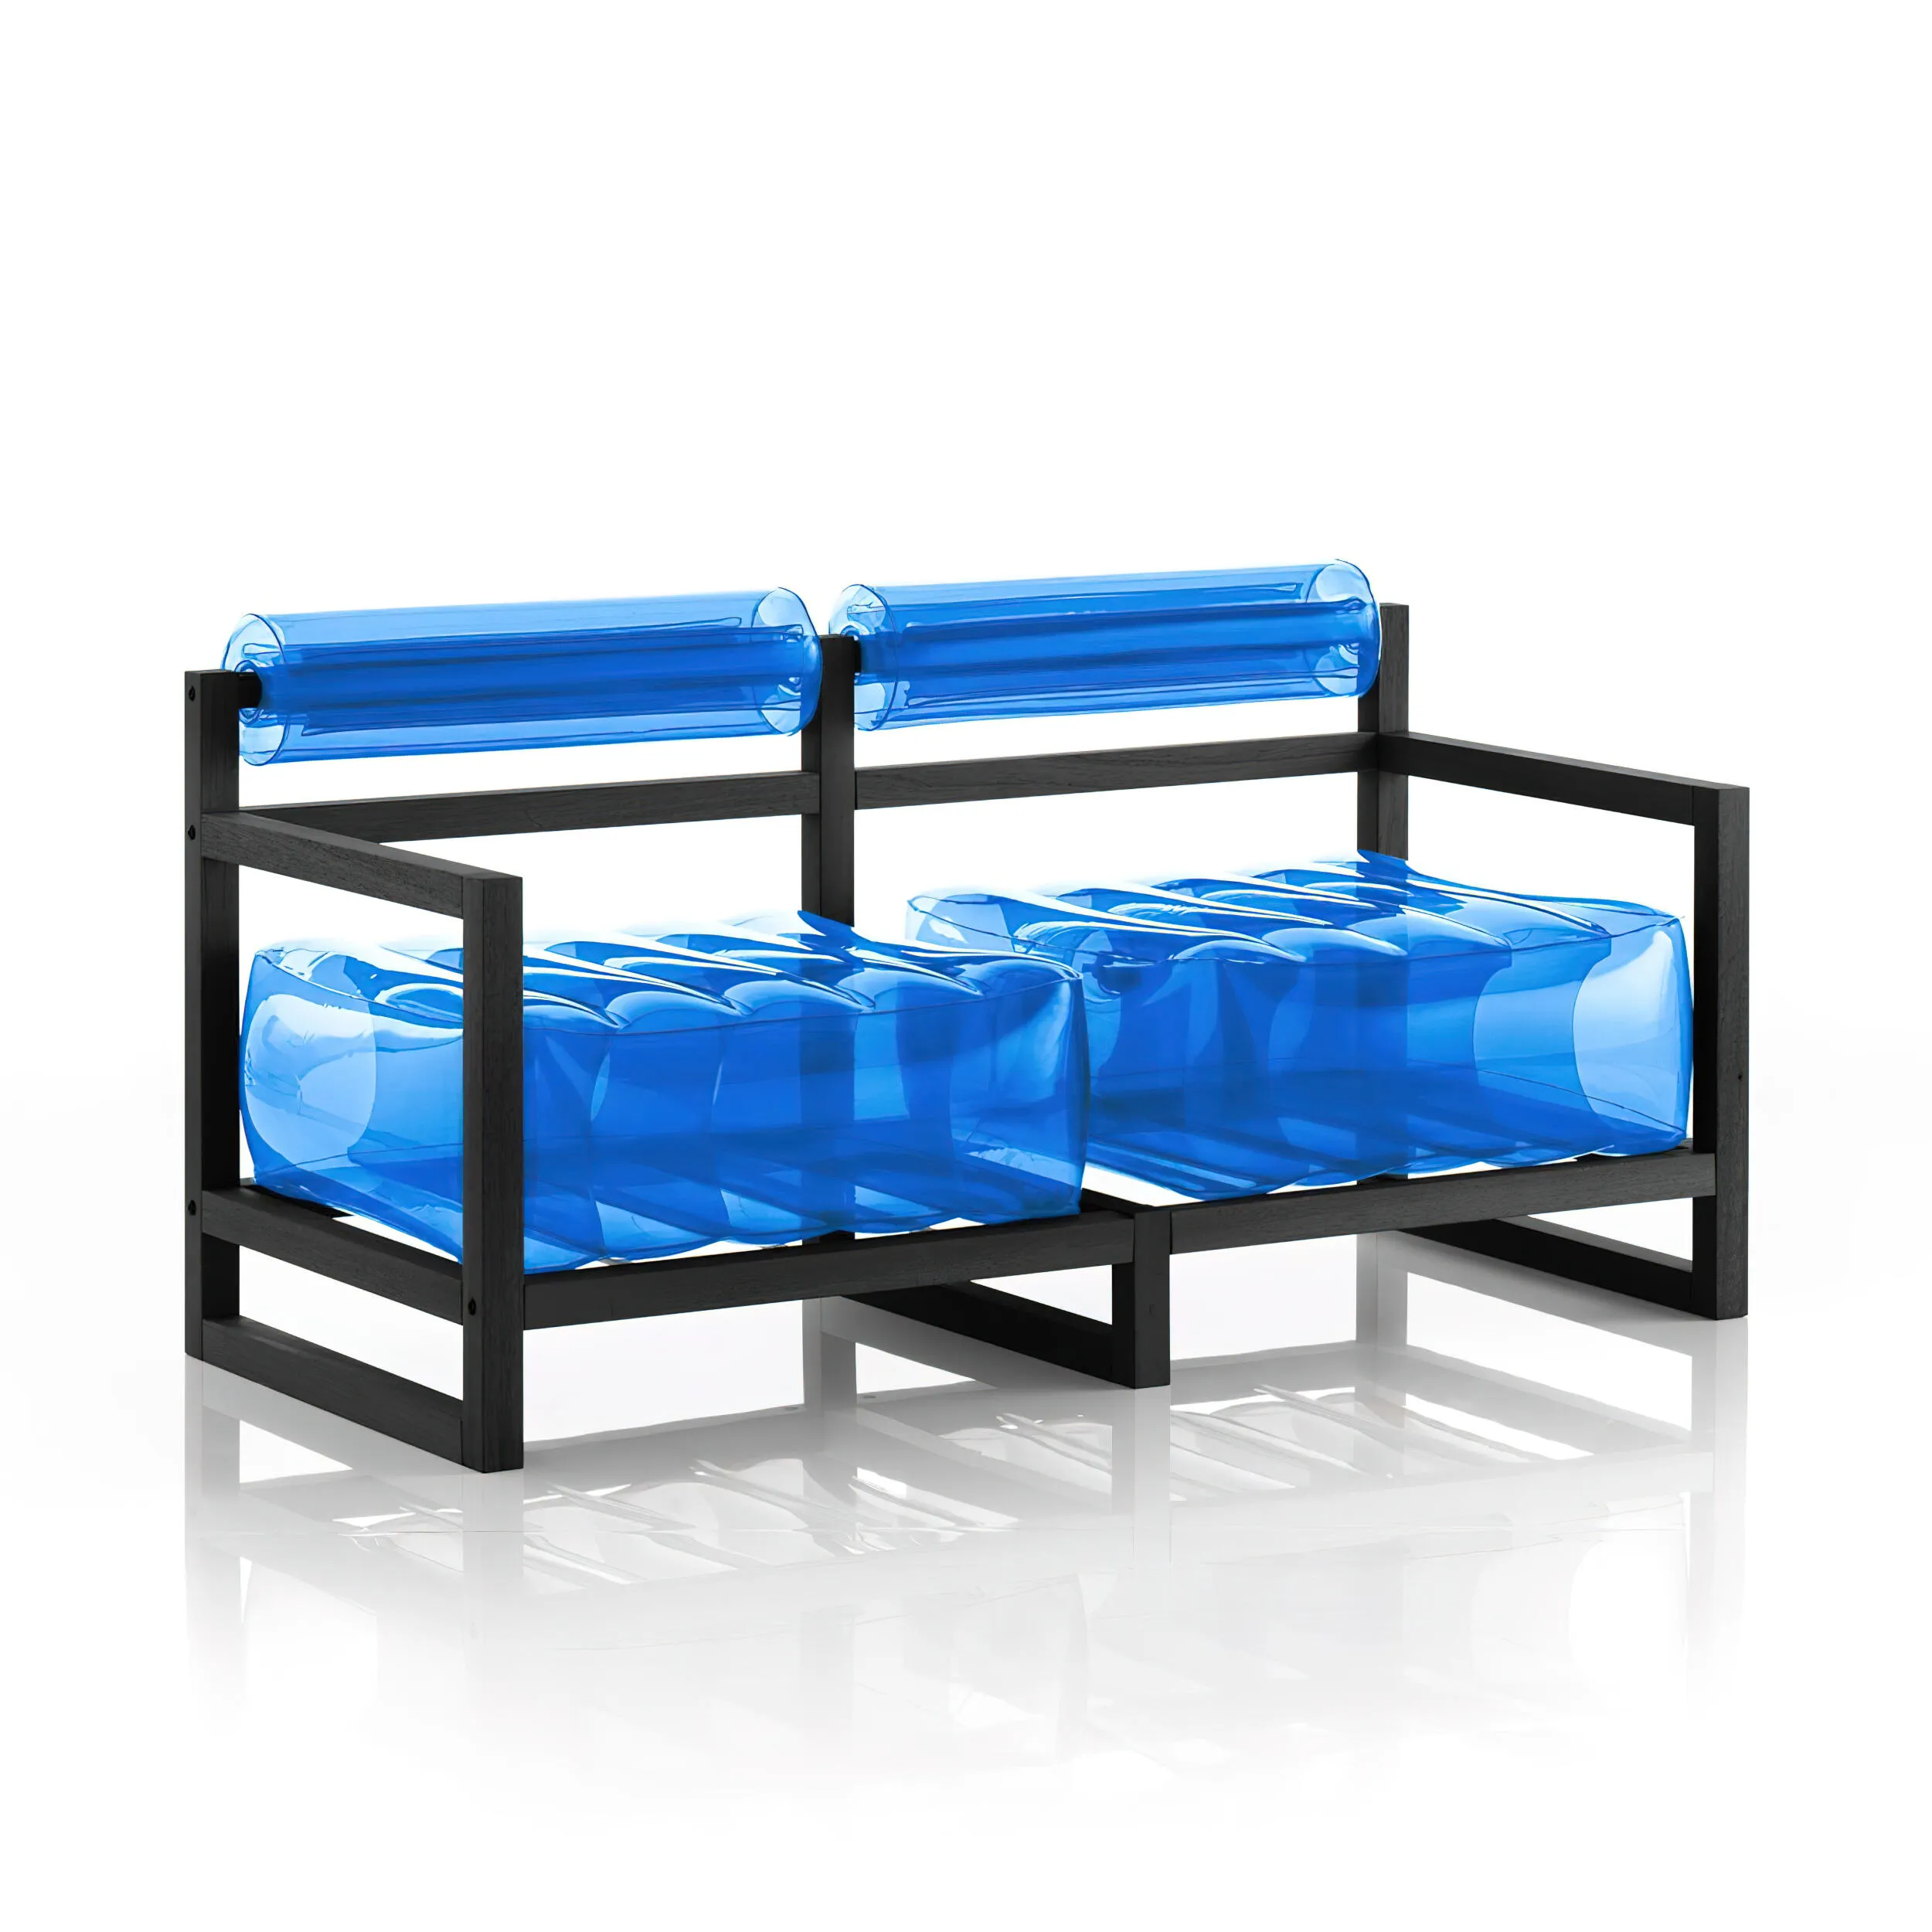 divano Yoko eko struttura in legno nero, dimensioni 62x191xH70 cm peso 18,7 kg, seduta gonfiabile in TPU colore blu